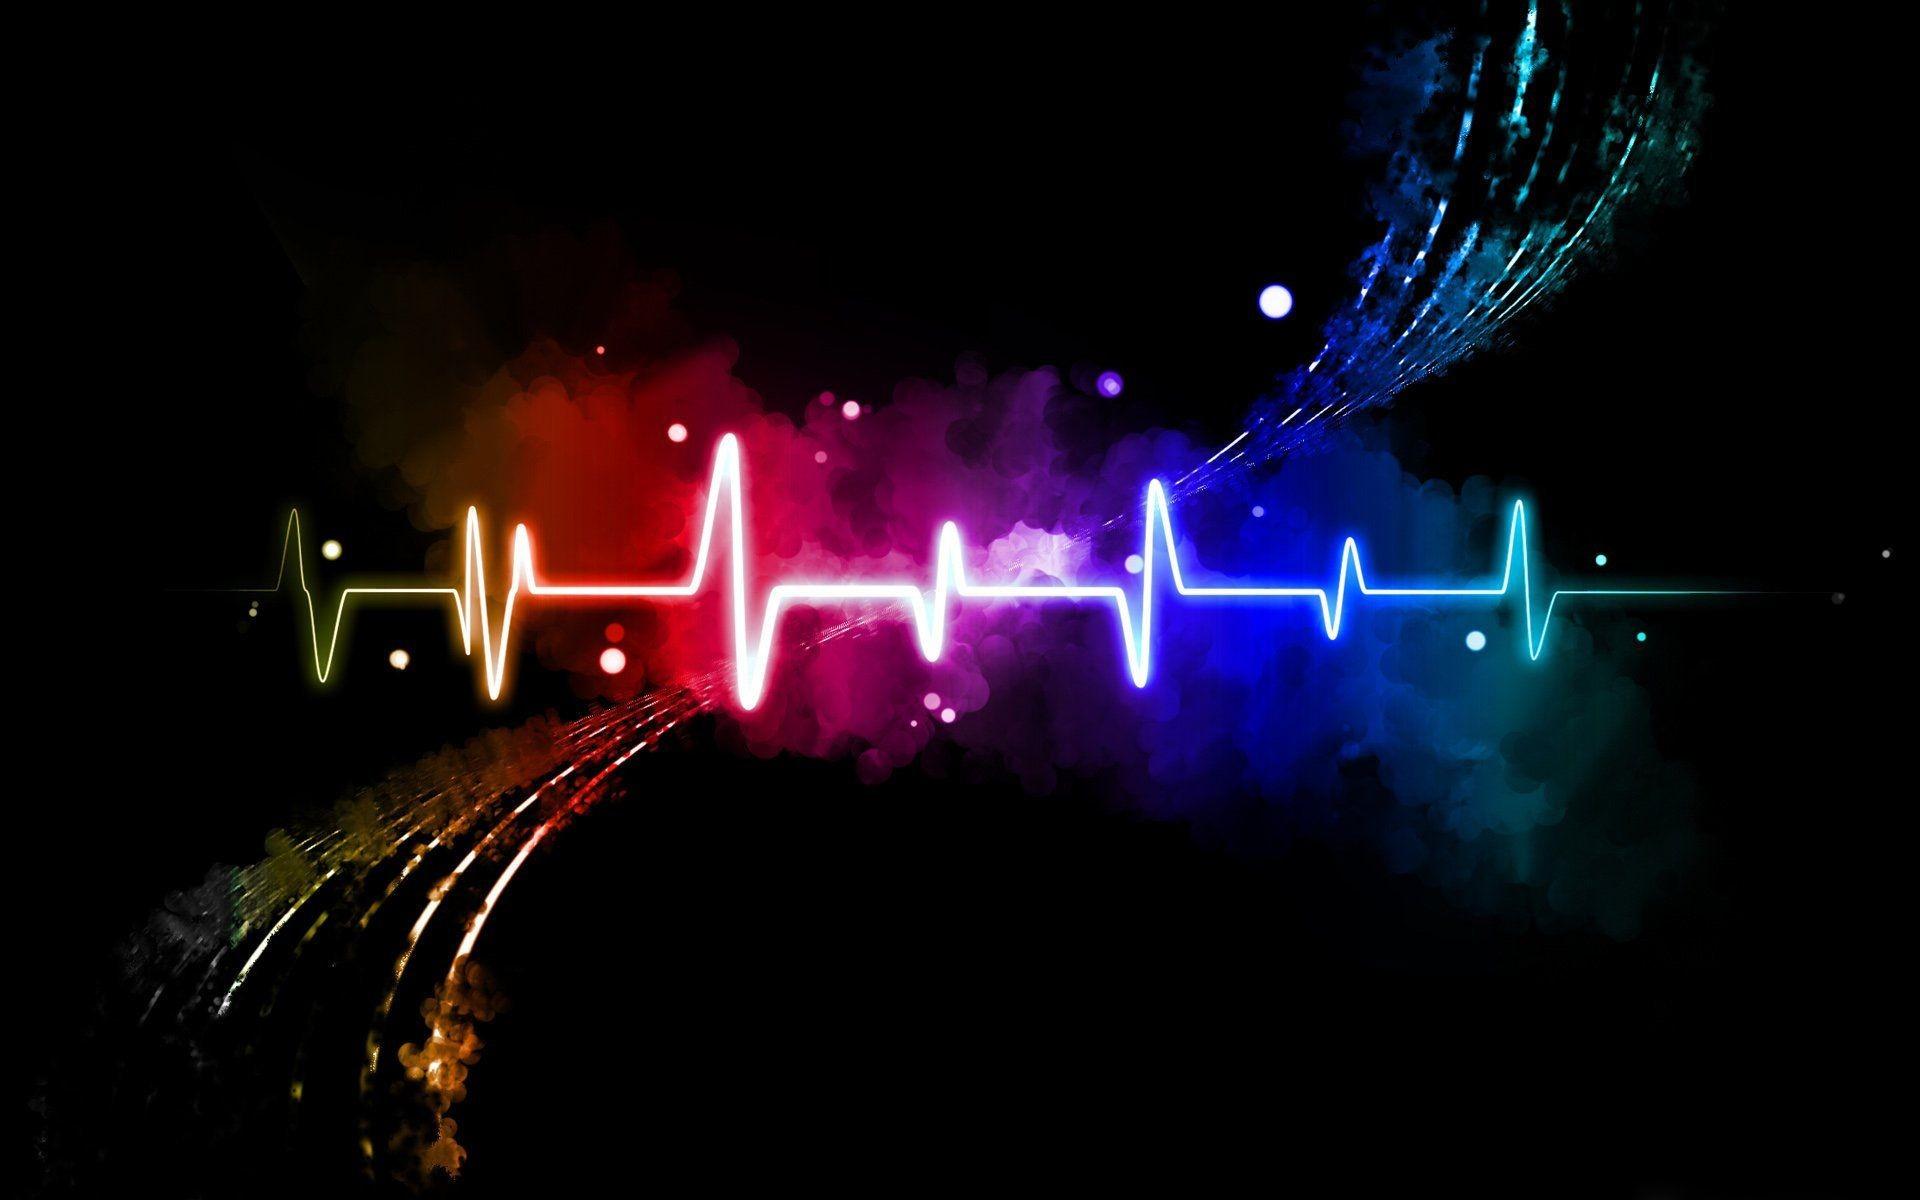 Heartbeat Wallpaper